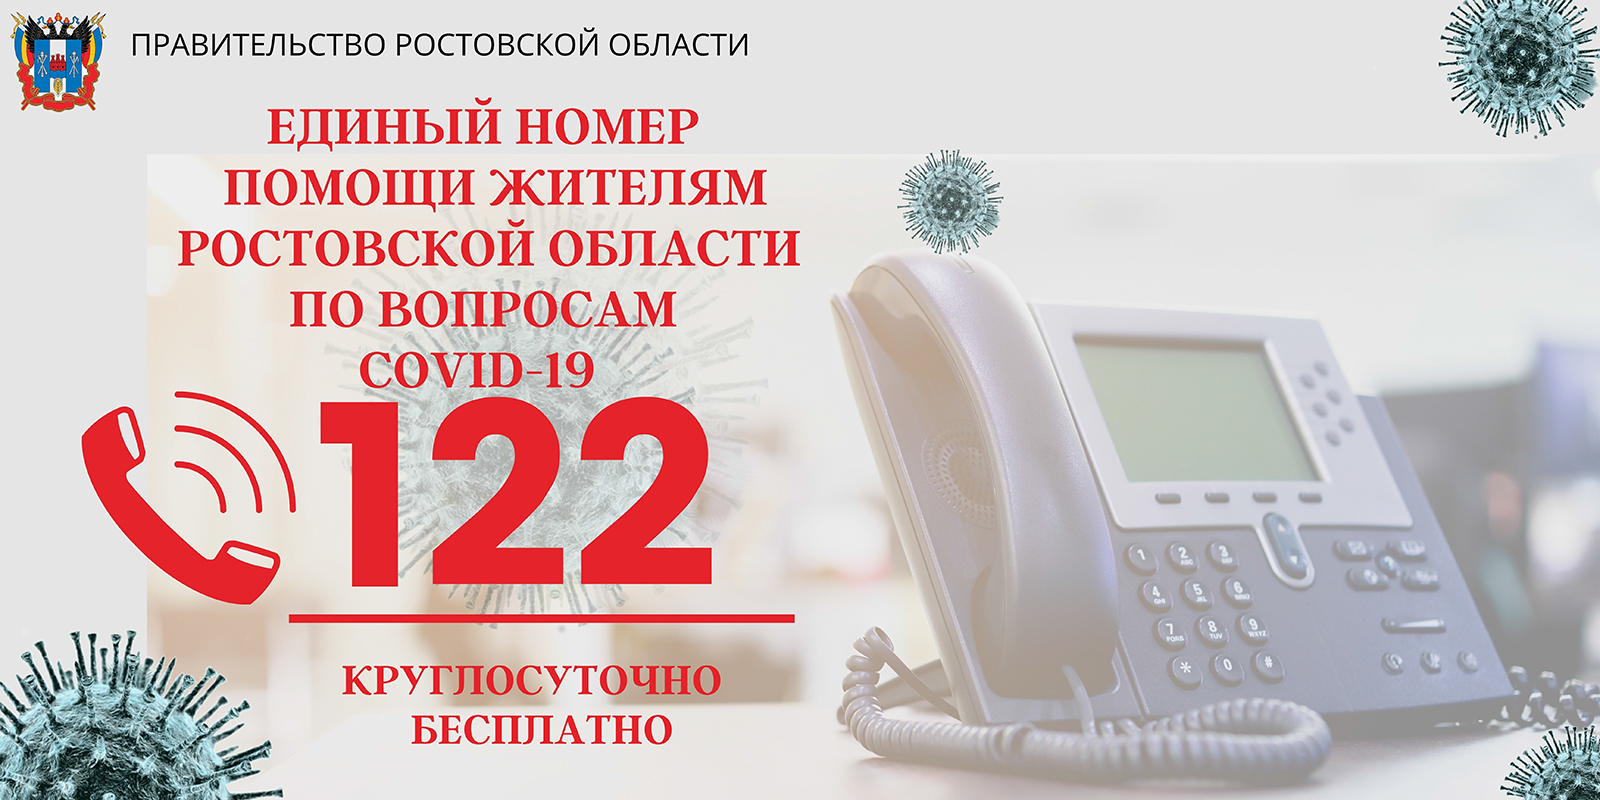 Единый номер помощи жителям Ростовской области по вопросам COVID-19